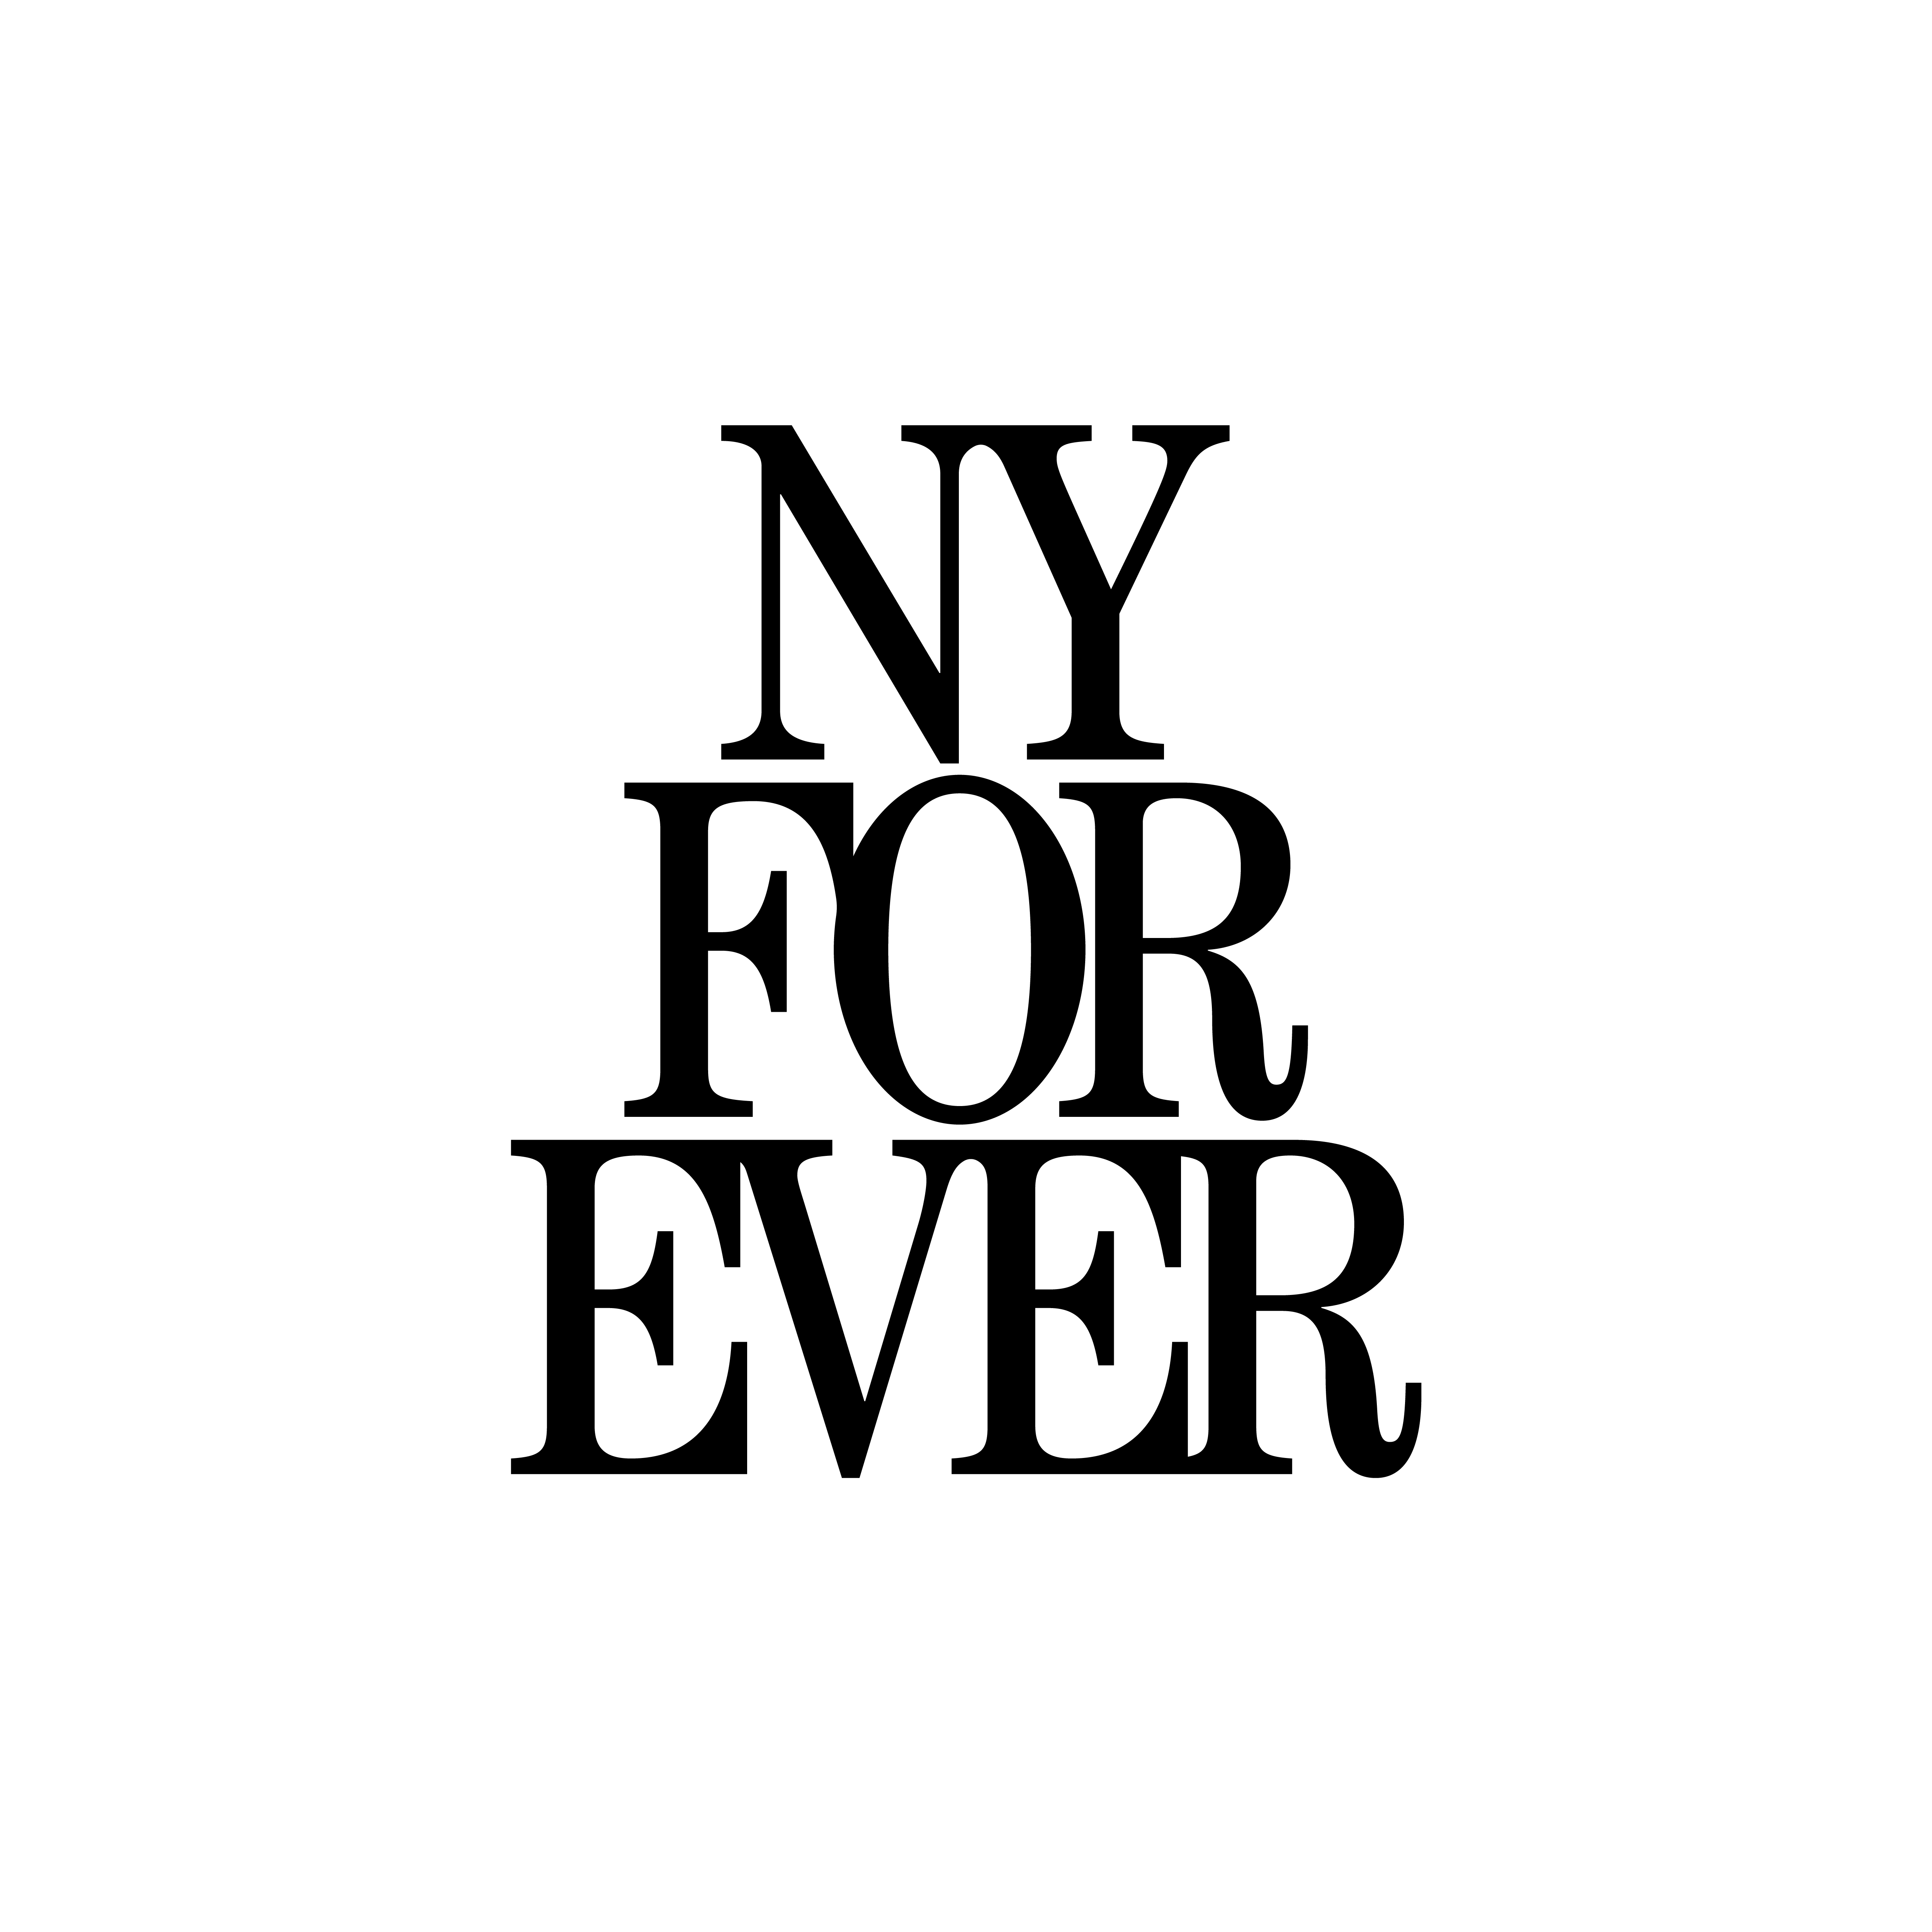 Episode 74: Jonathan Rosen, Co-Founder of NY Forever